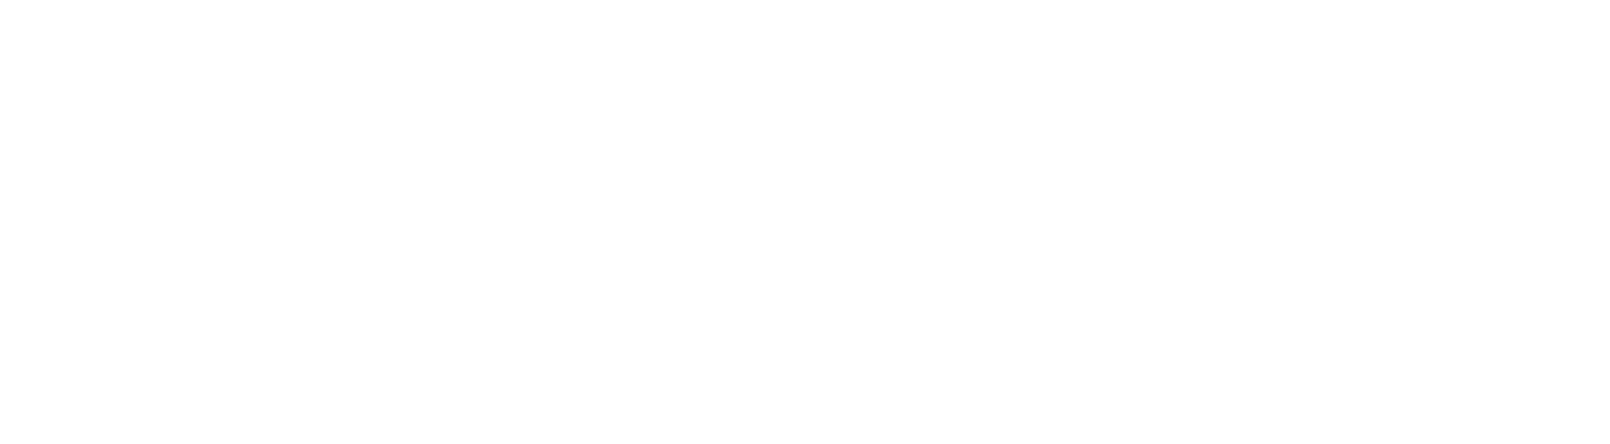 Aurora Innovation logo large for dark backgrounds (transparent PNG)